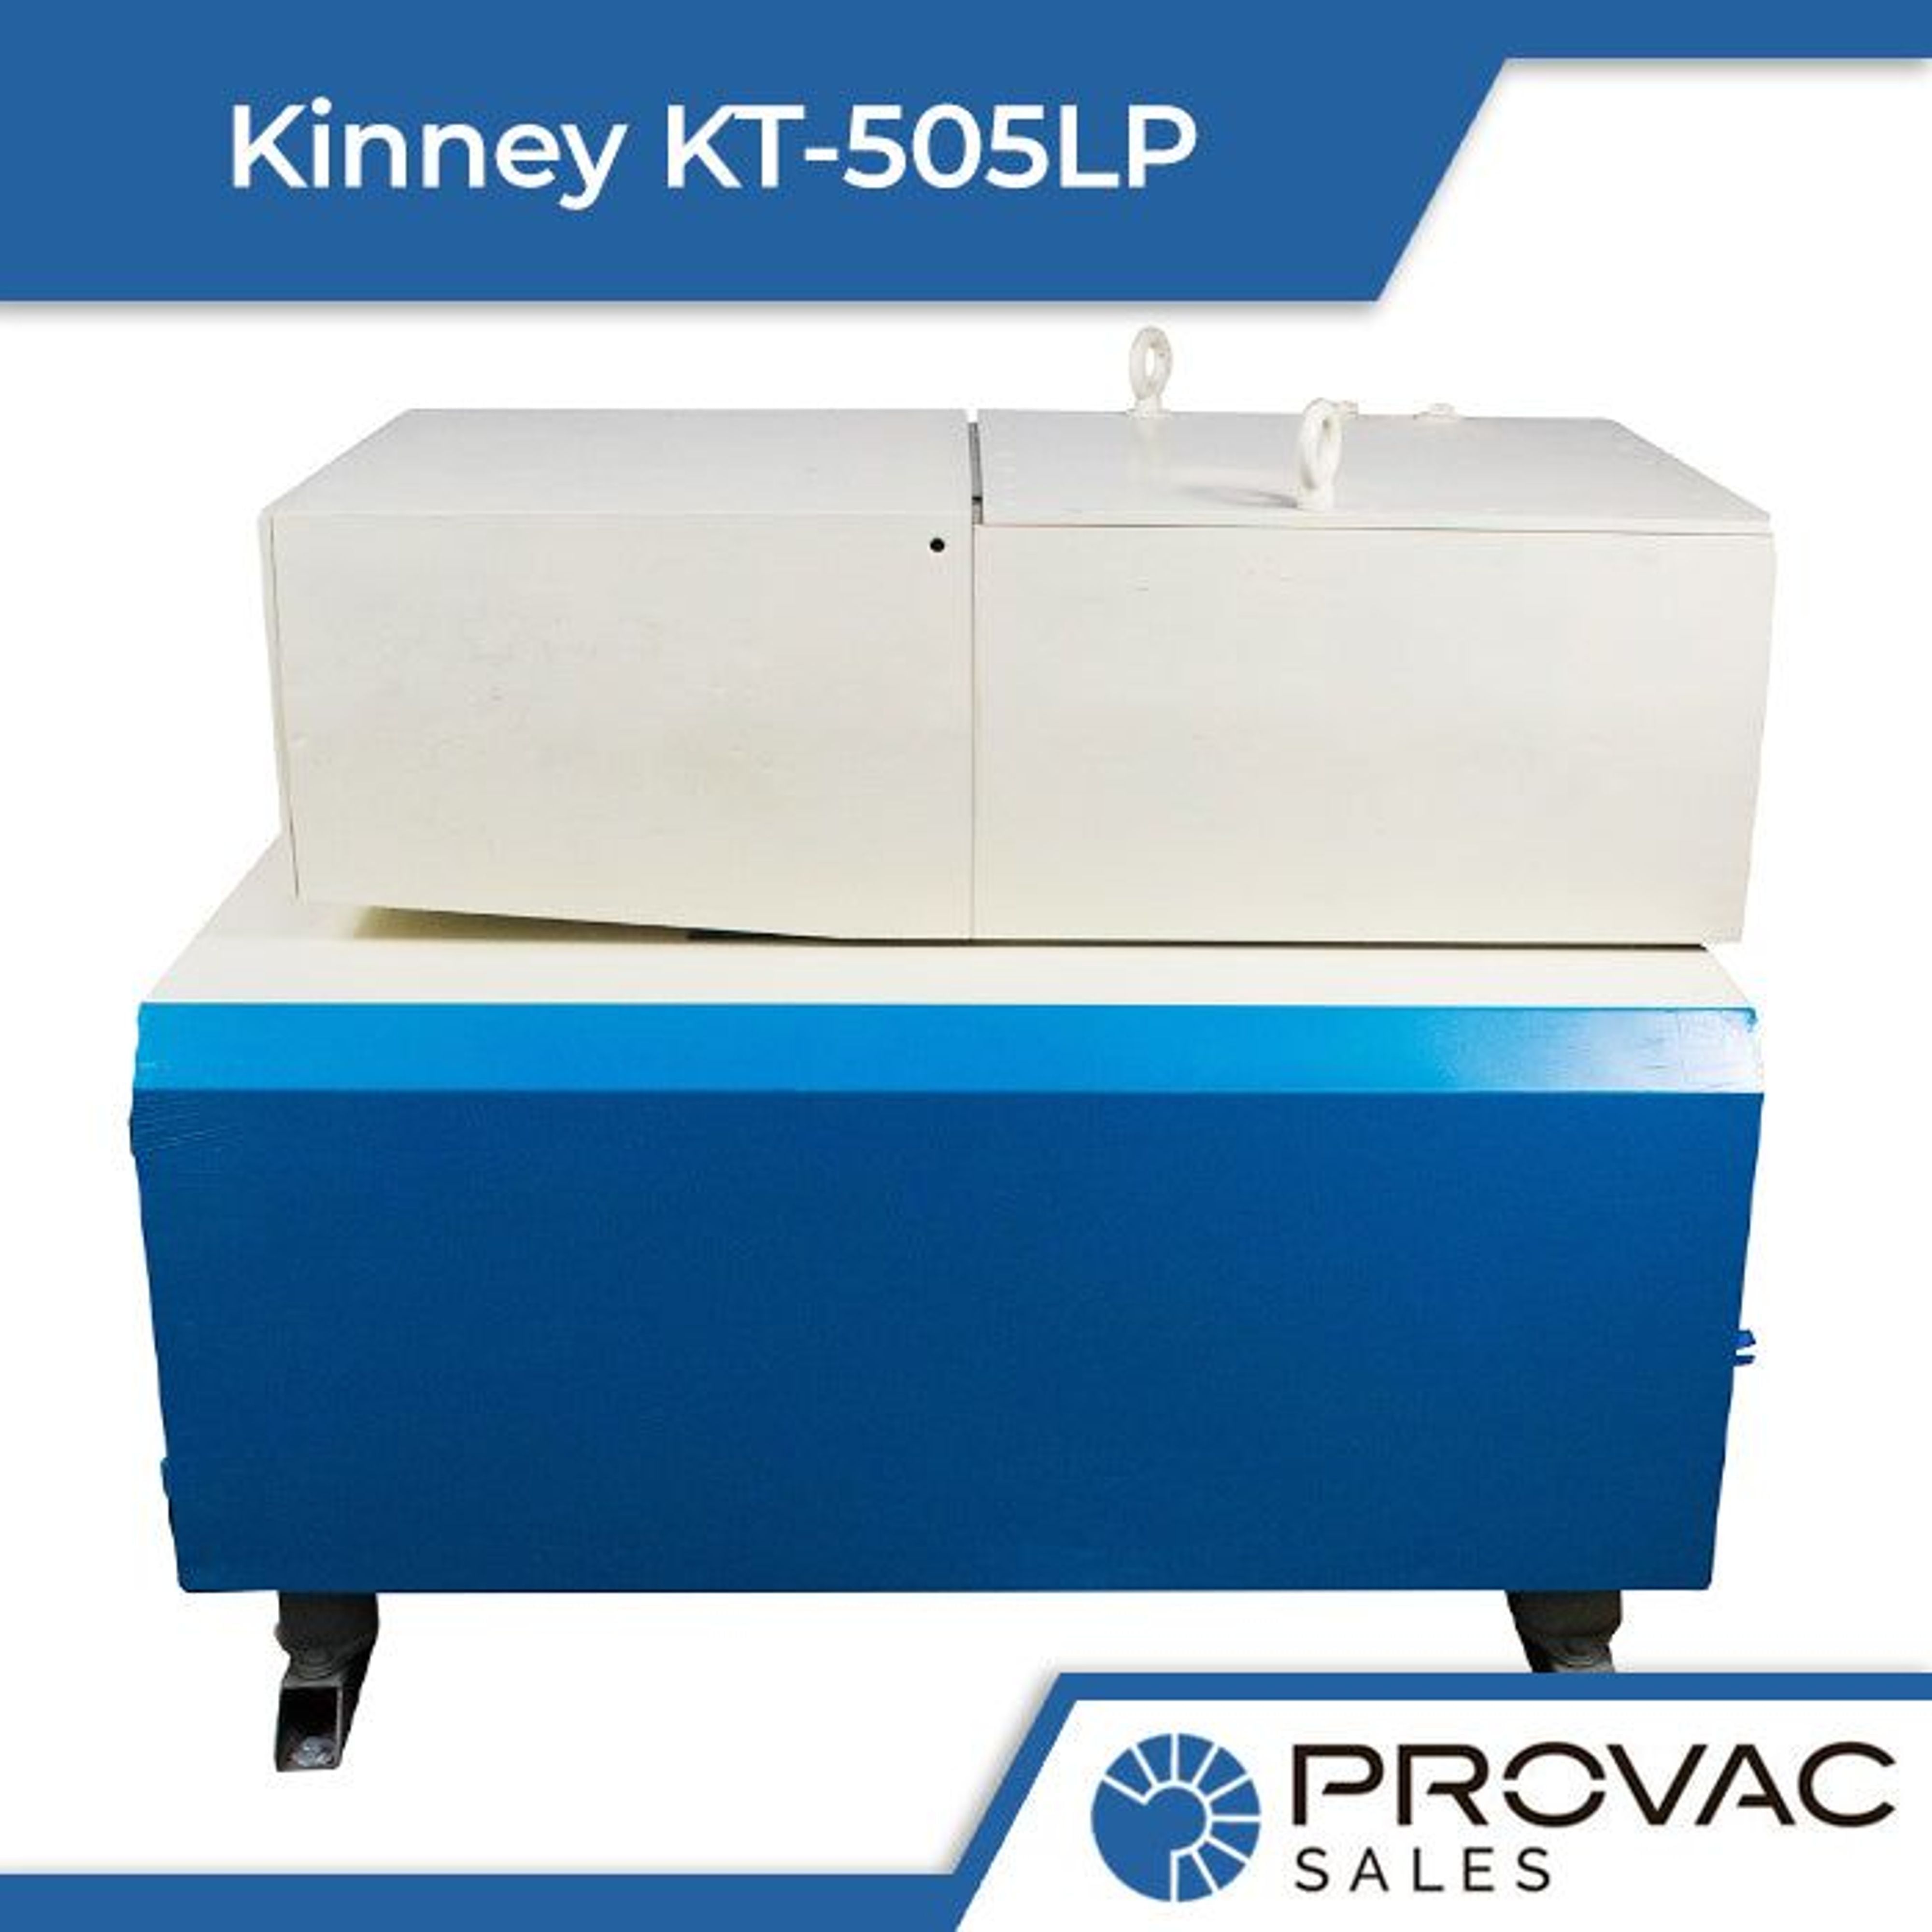 Kinney KT-505LP Low Profile Piston Pump, In Stock Background